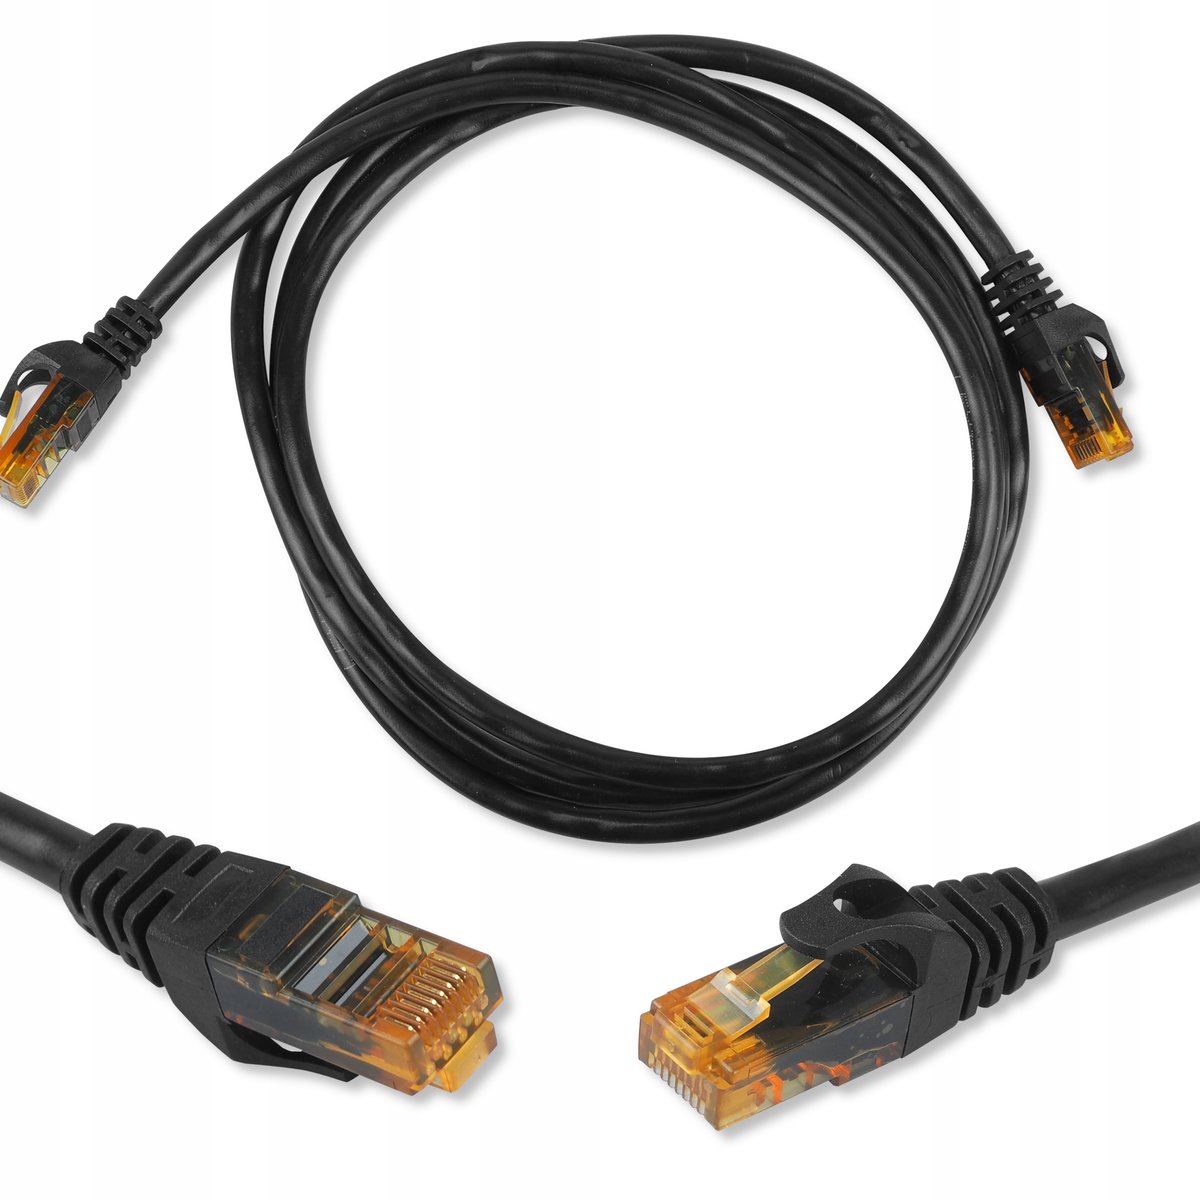 Zdjęcia - Kabel LTC  Komputerowy Sieciowy Patchcord Rj-45 1M 